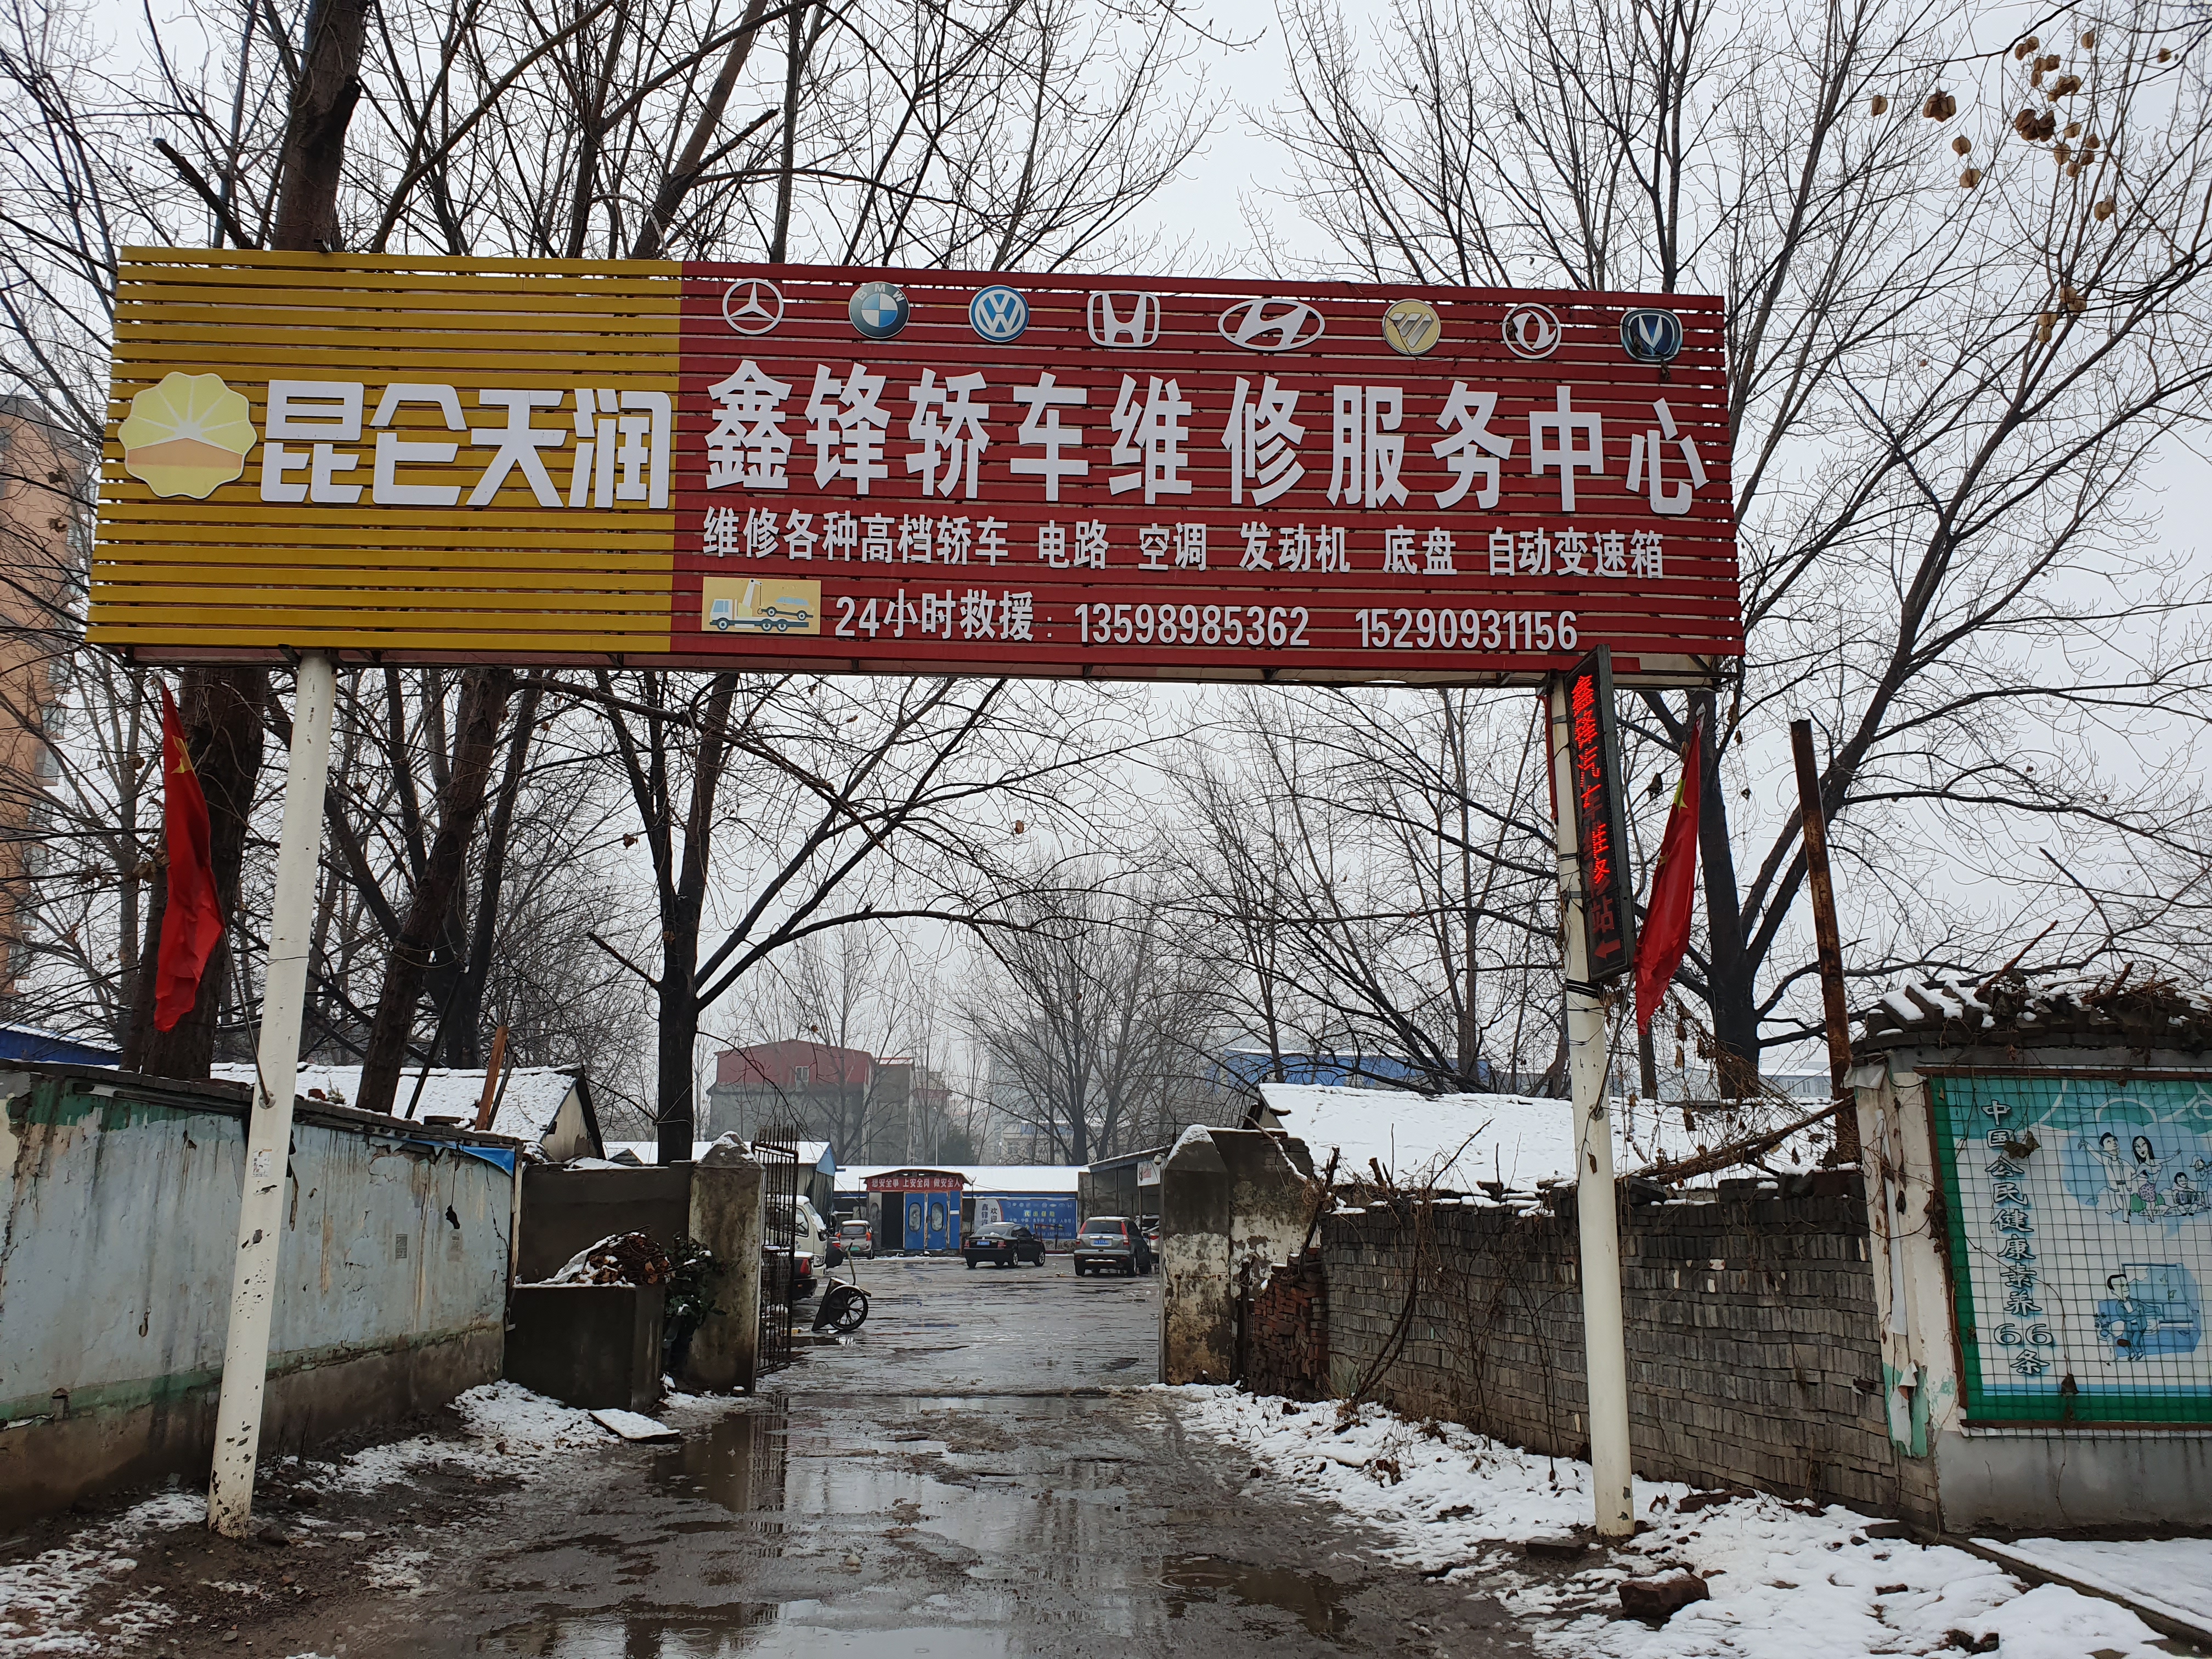 襄城县自然资源局回应土地挂牌出让投诉 称确实存在瑕疵